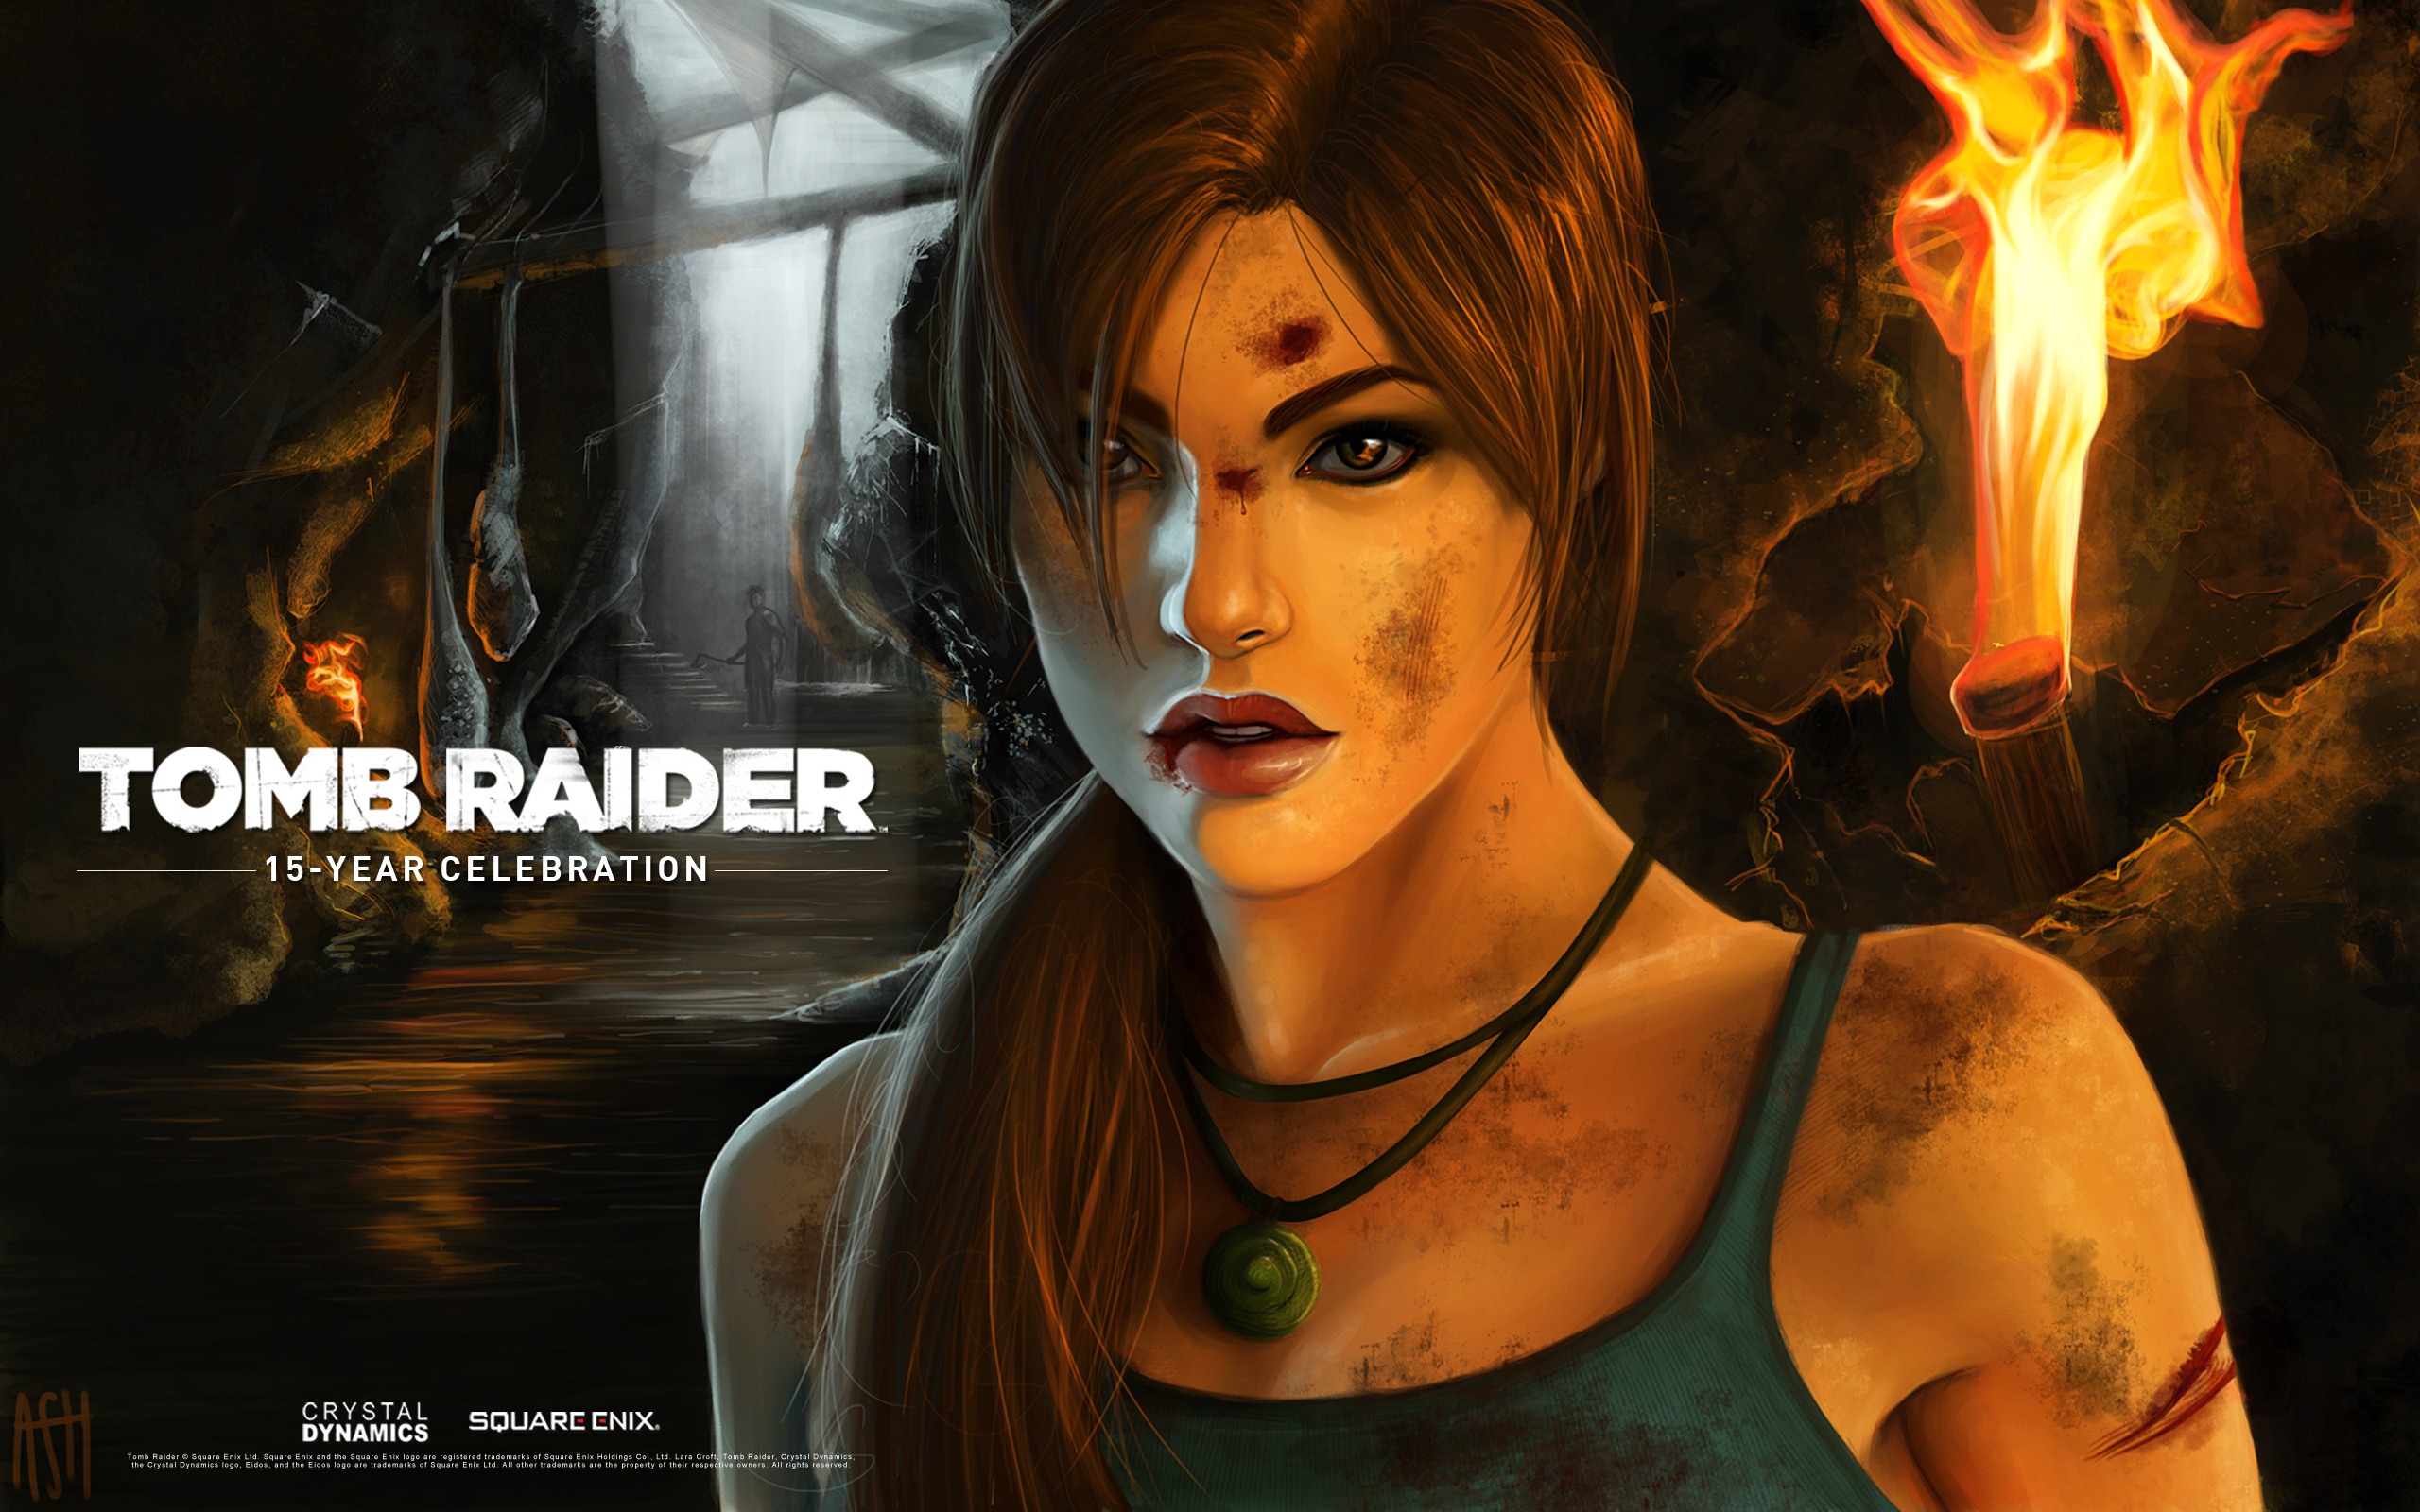 Tomb Raider 15-Year Celebration 古墓丽影15周年纪念版 高清壁纸7 - 2560x1600